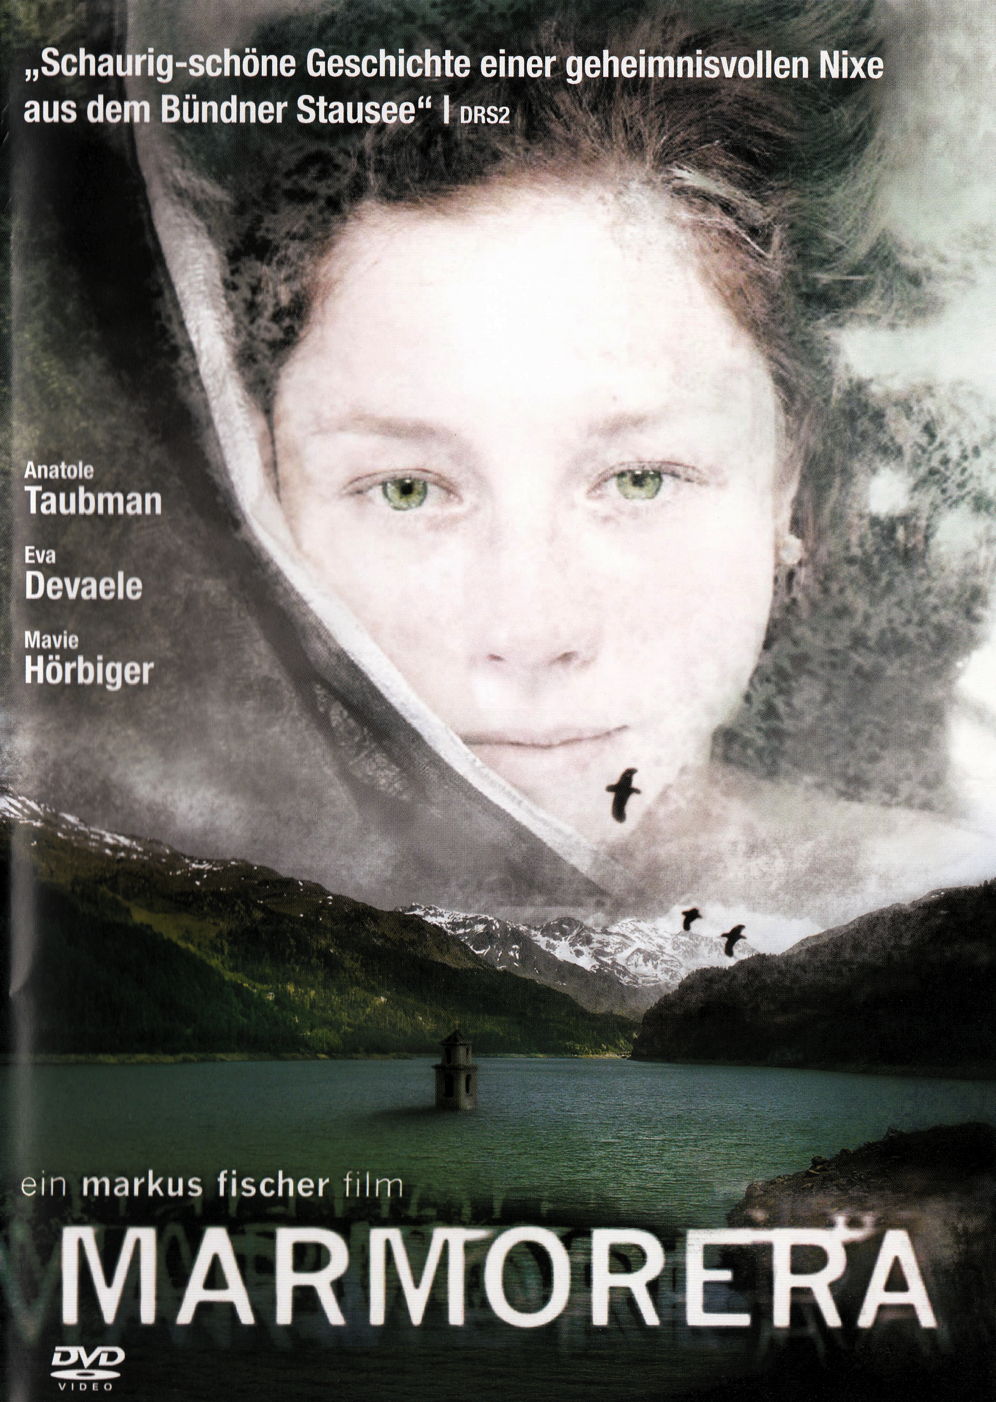 Film Marmorera [DVD] von Markus Fischer gebraucht kaufen bei Melando Schweiz